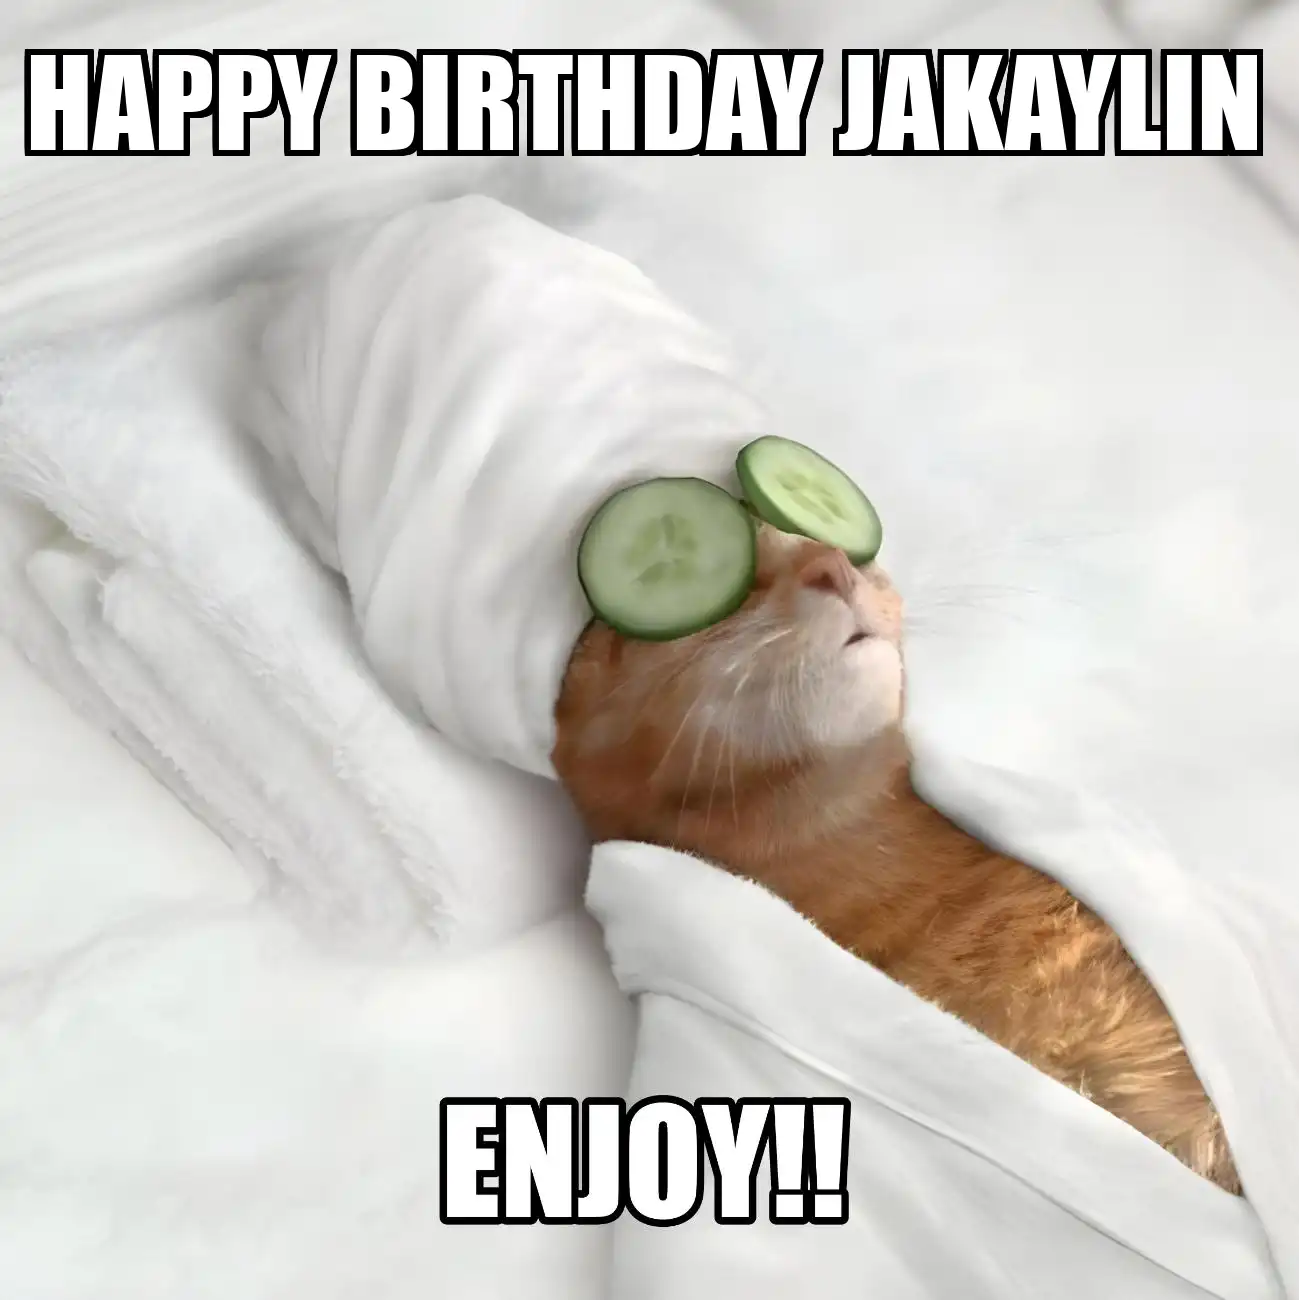 Happy Birthday Jakaylin Enjoy Cat Meme